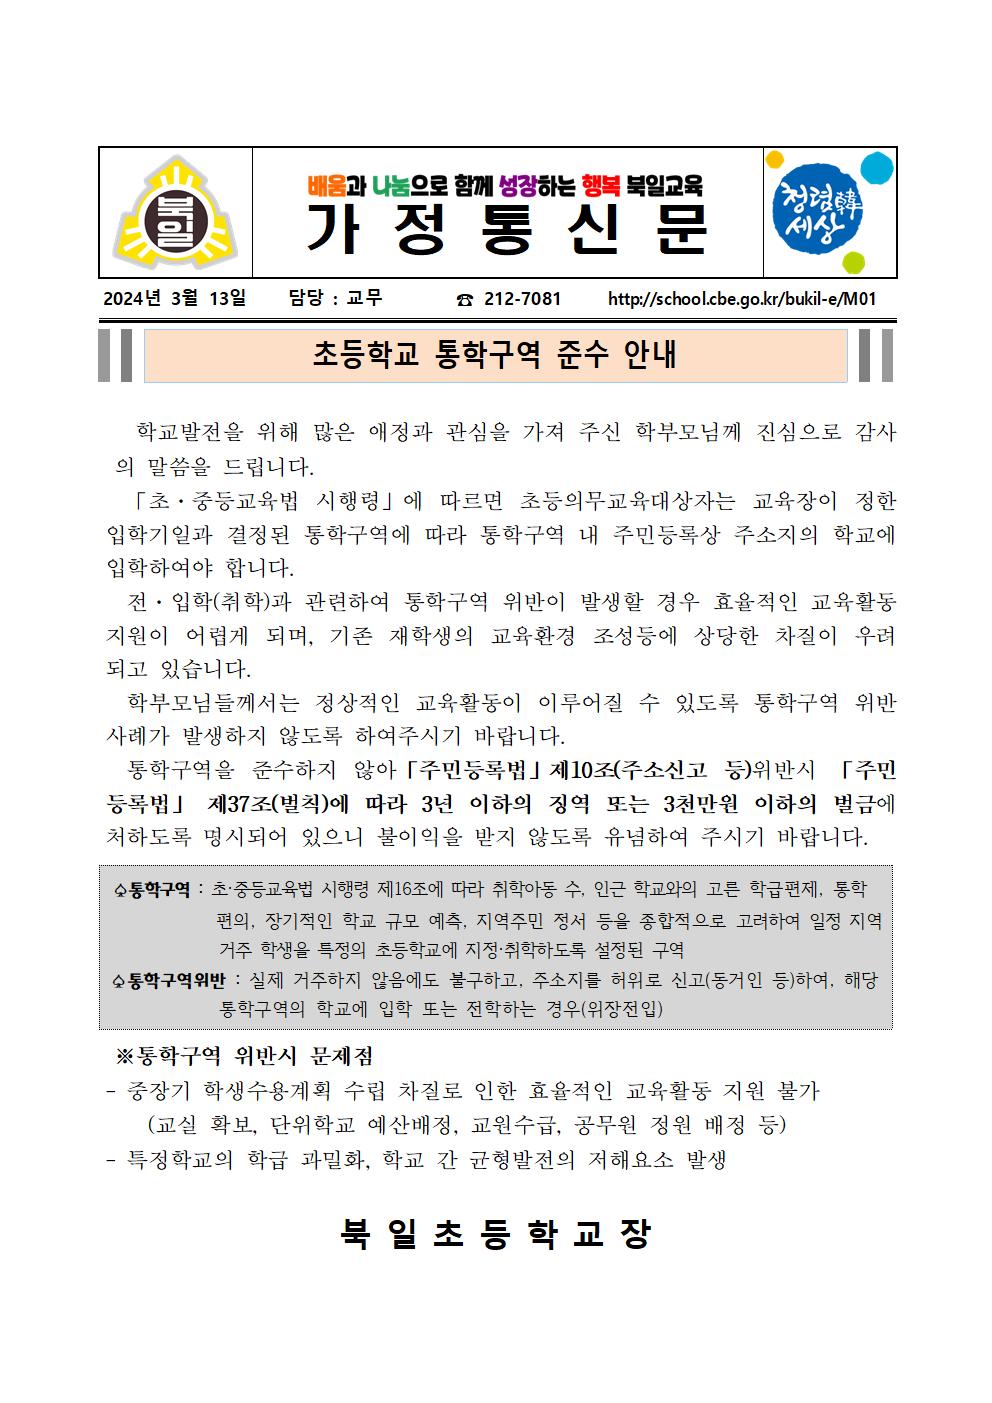 초등학교 통학구역 준수 안내 가정통신문001